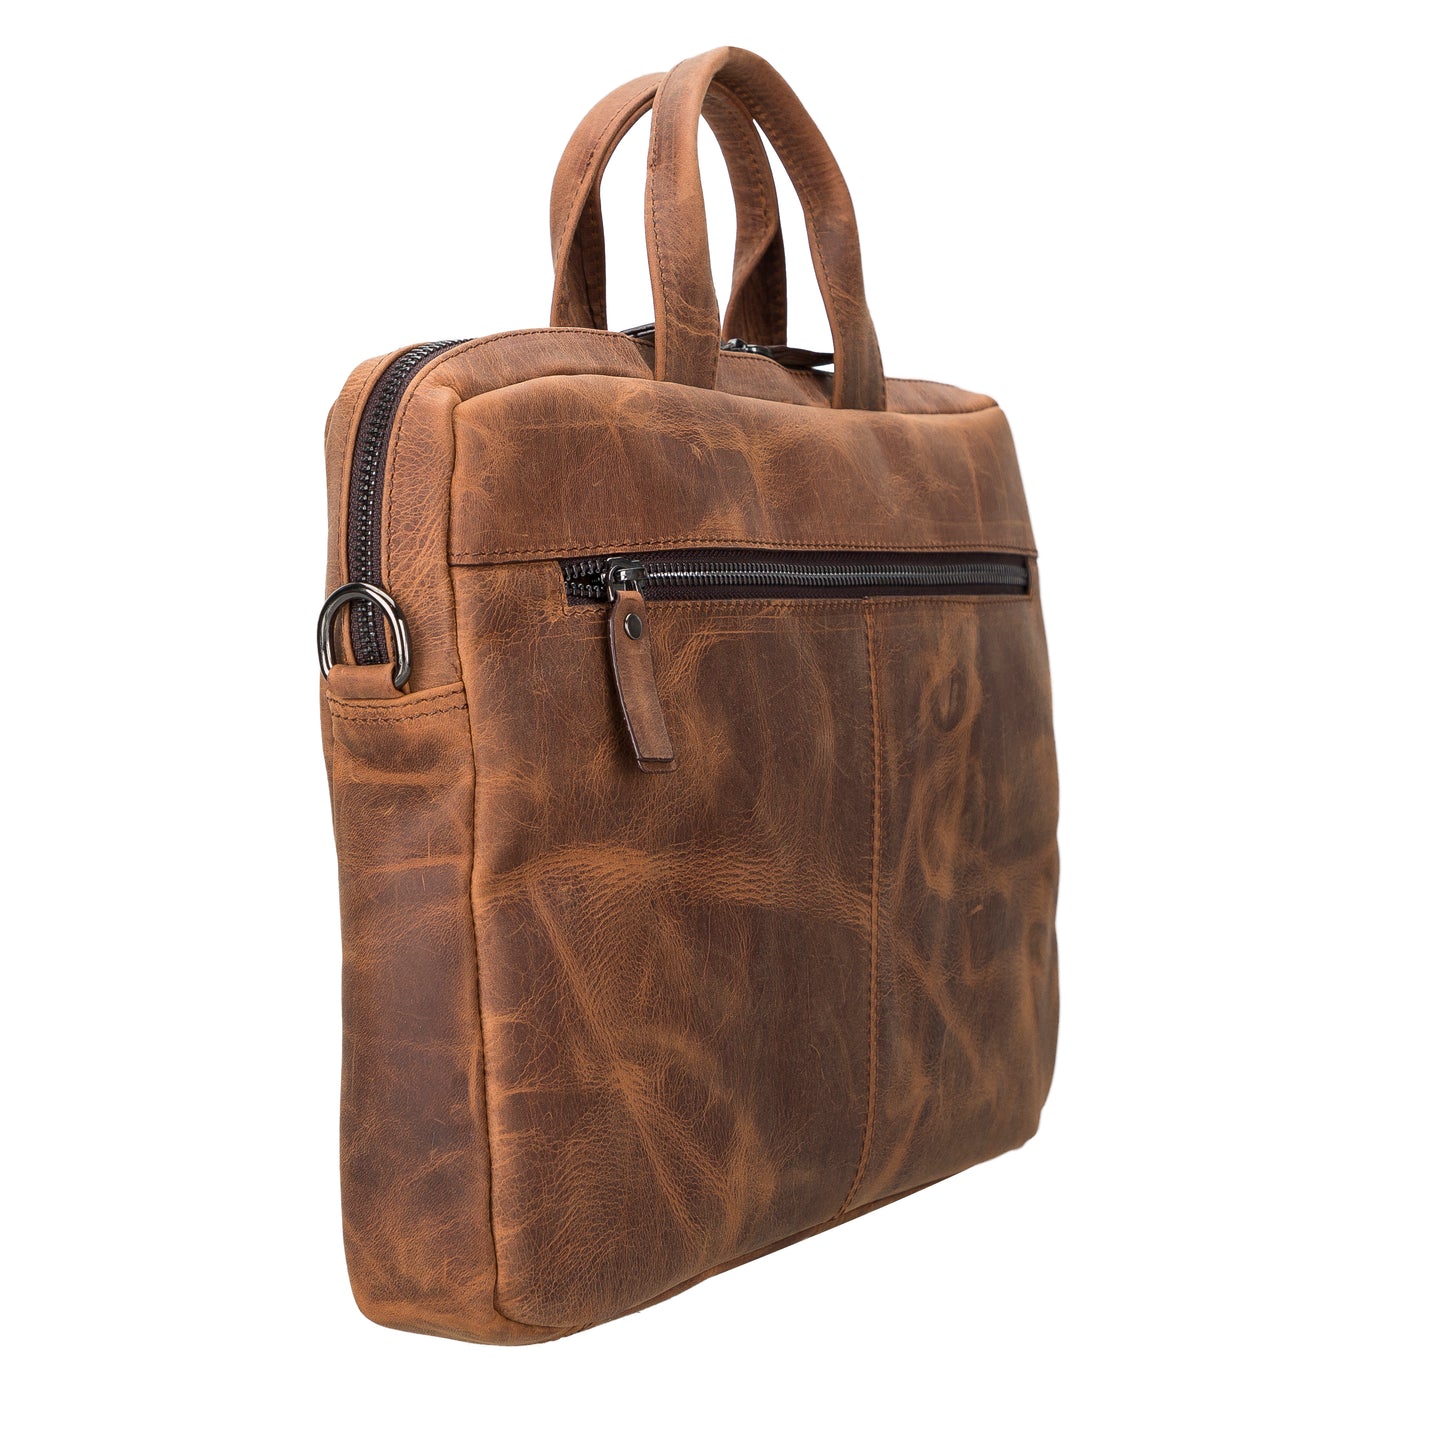 Leather Notebook/Macbook Bag 16" - Teak Brown